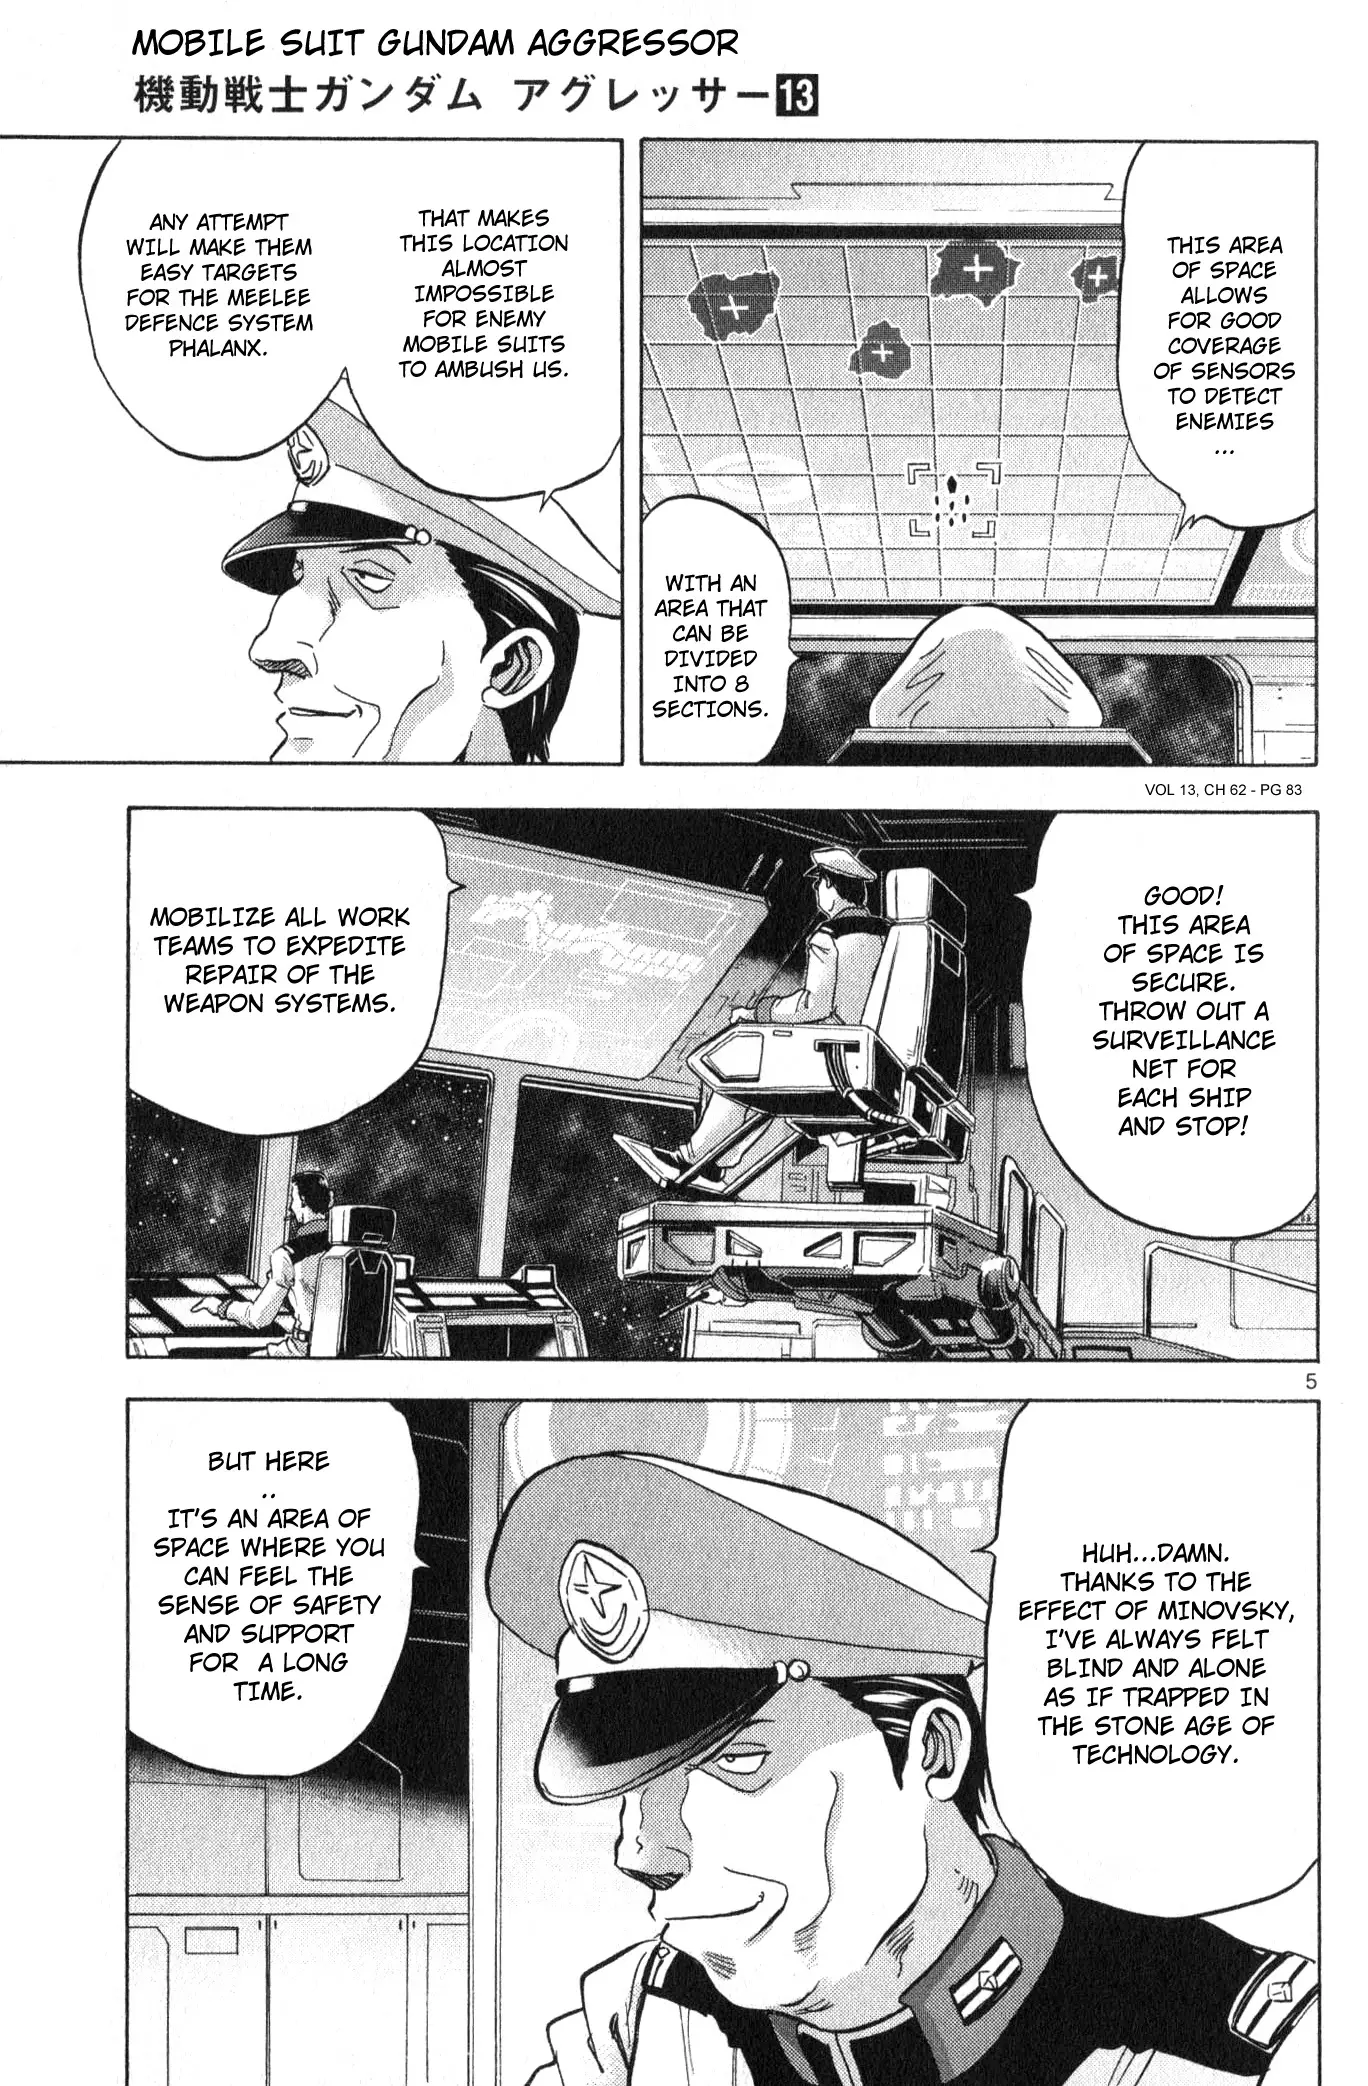 Mobile Suit Gundam Aggressor - 62 page 5-c1cfefaf